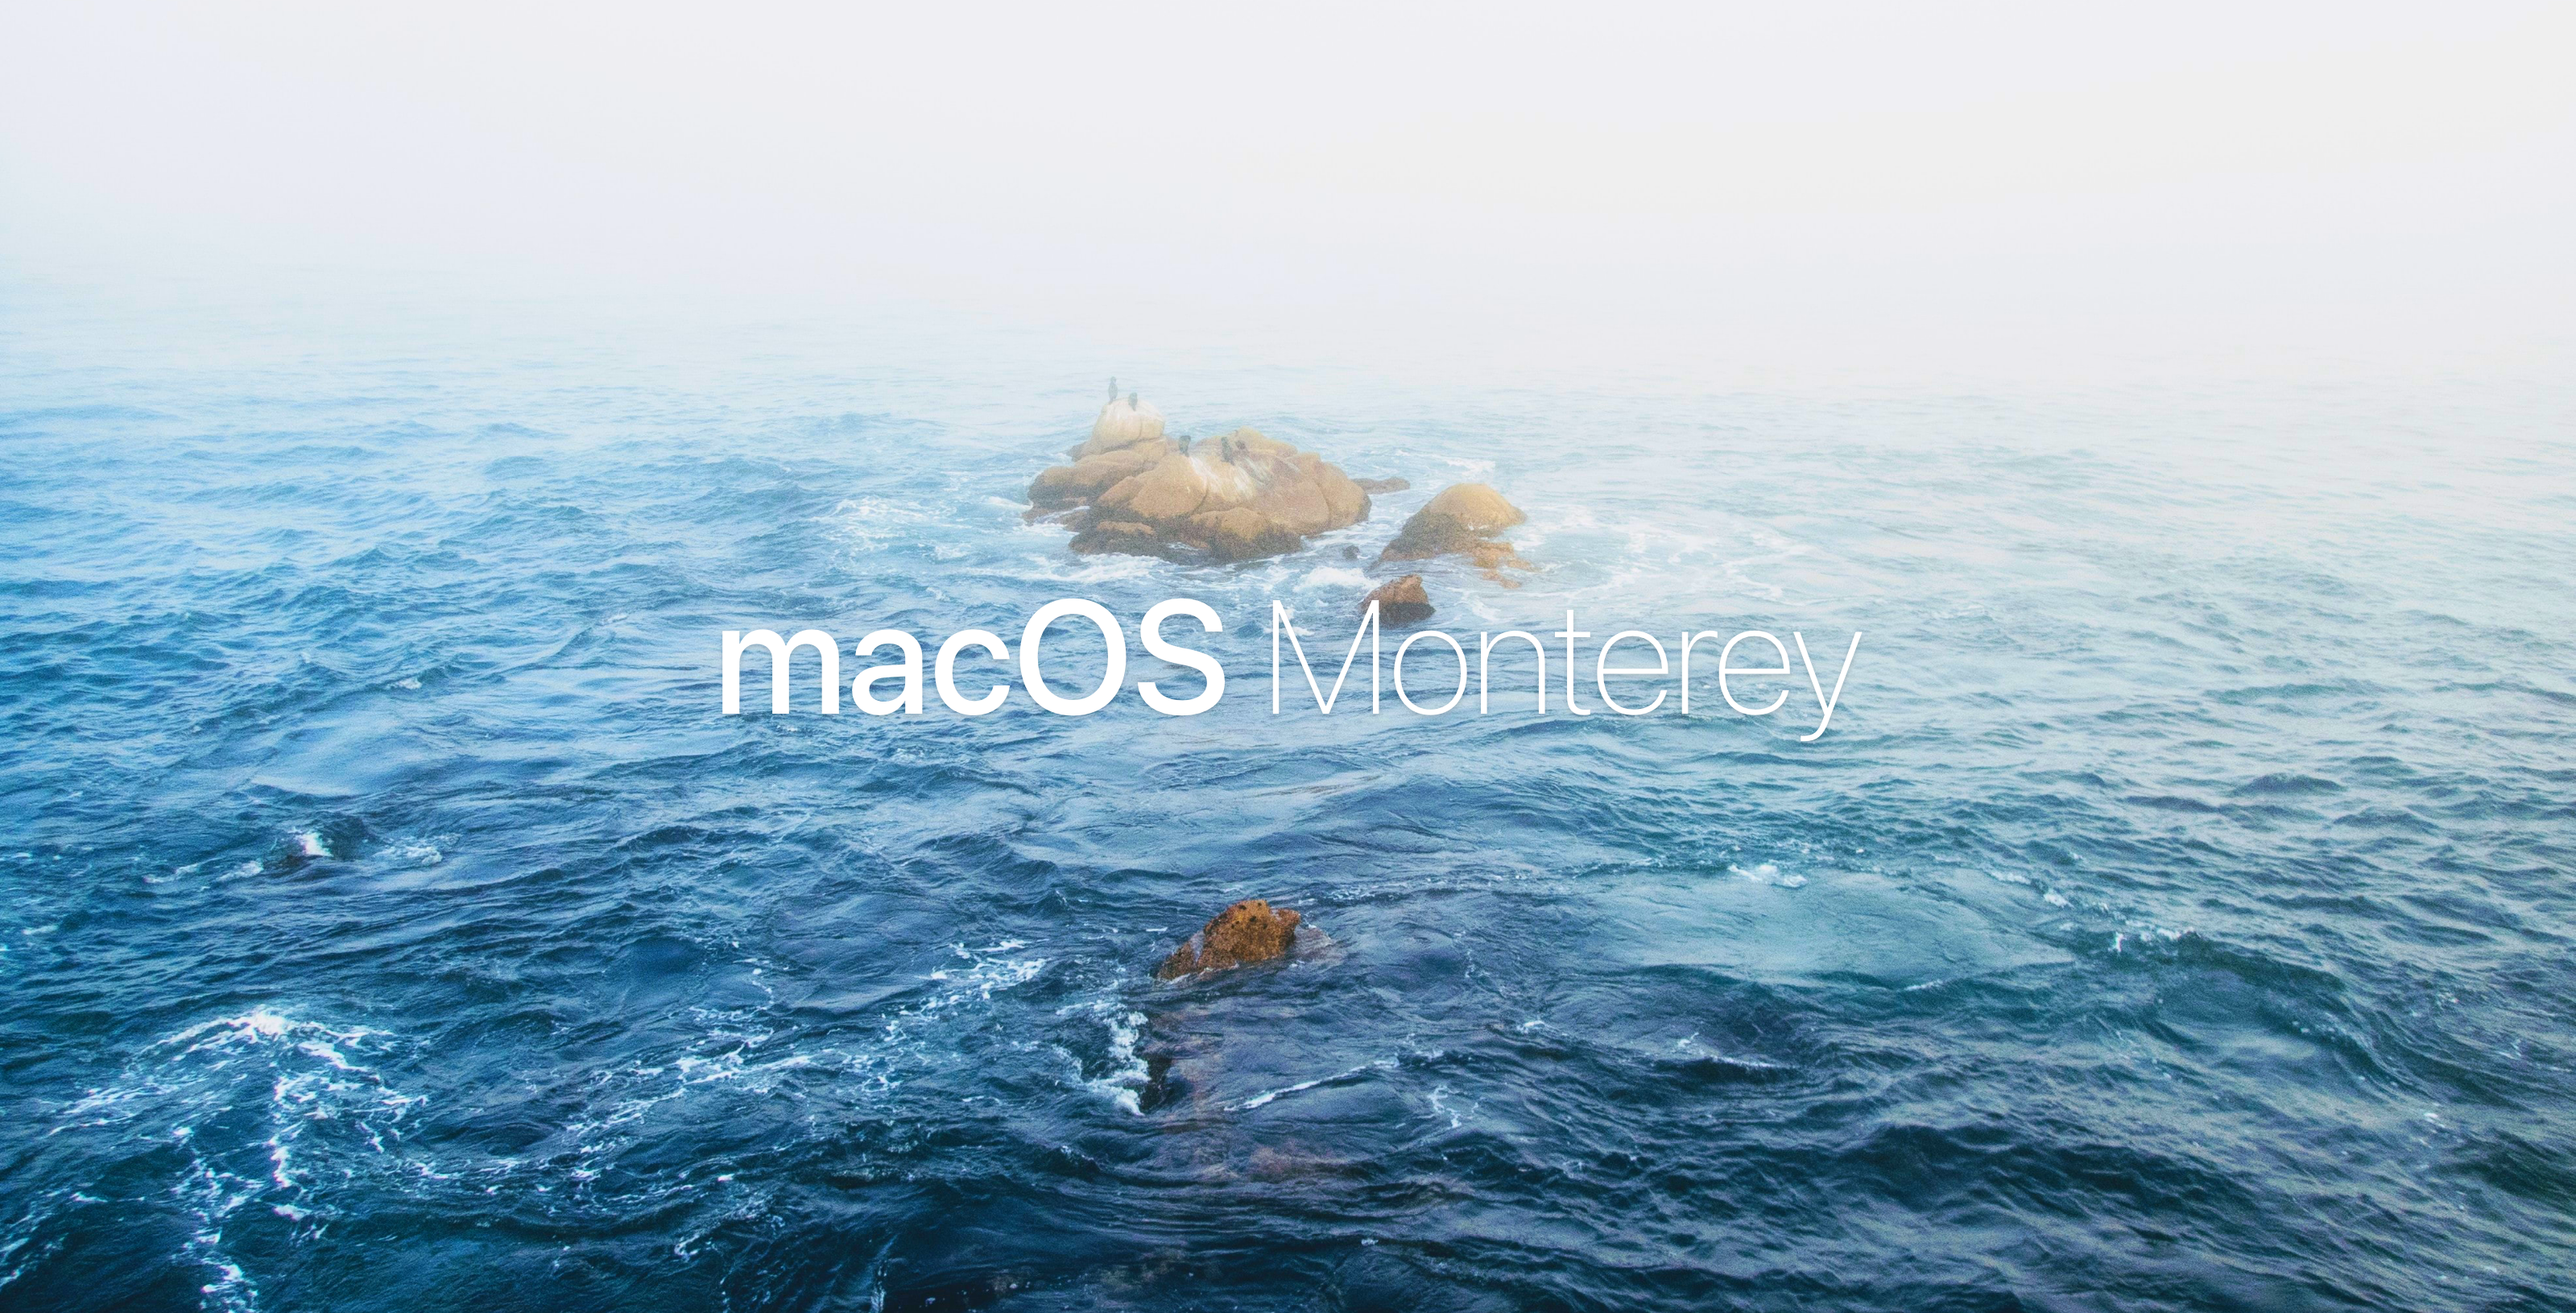 Conceito apresenta o macOS “Monterey” com pequenas mas boas novidades